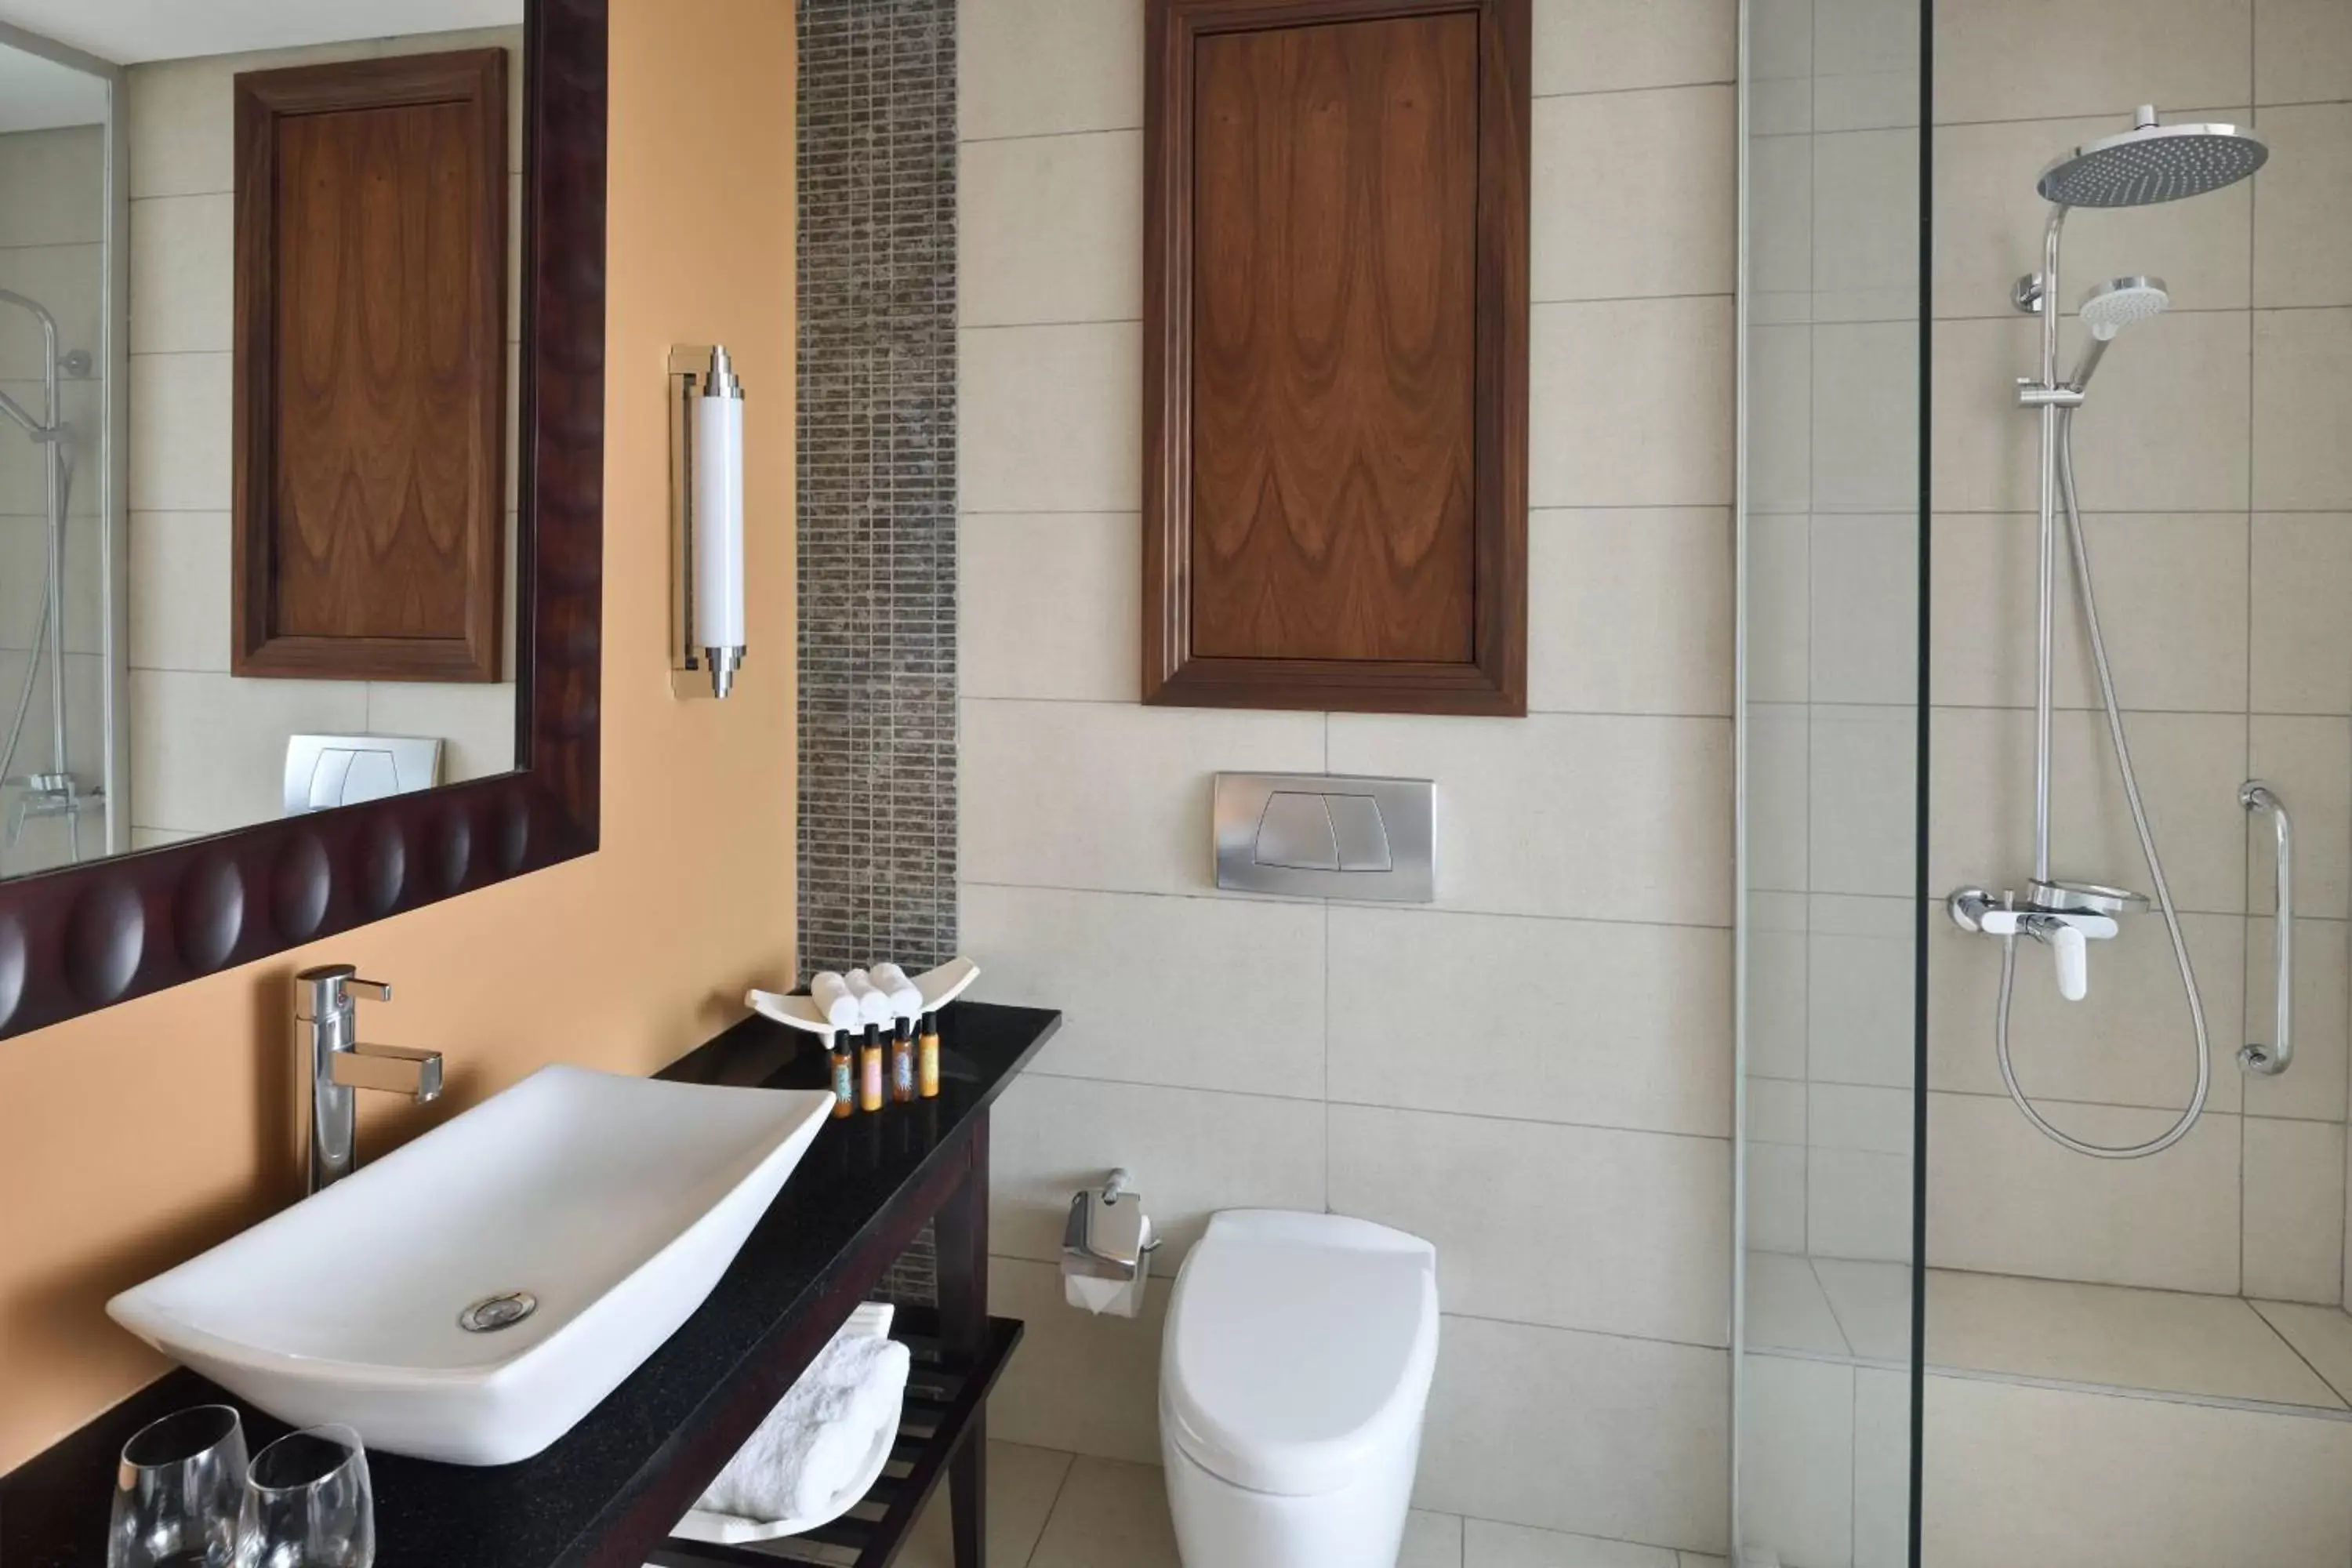 Bathroom in Accra Marriott Hotel